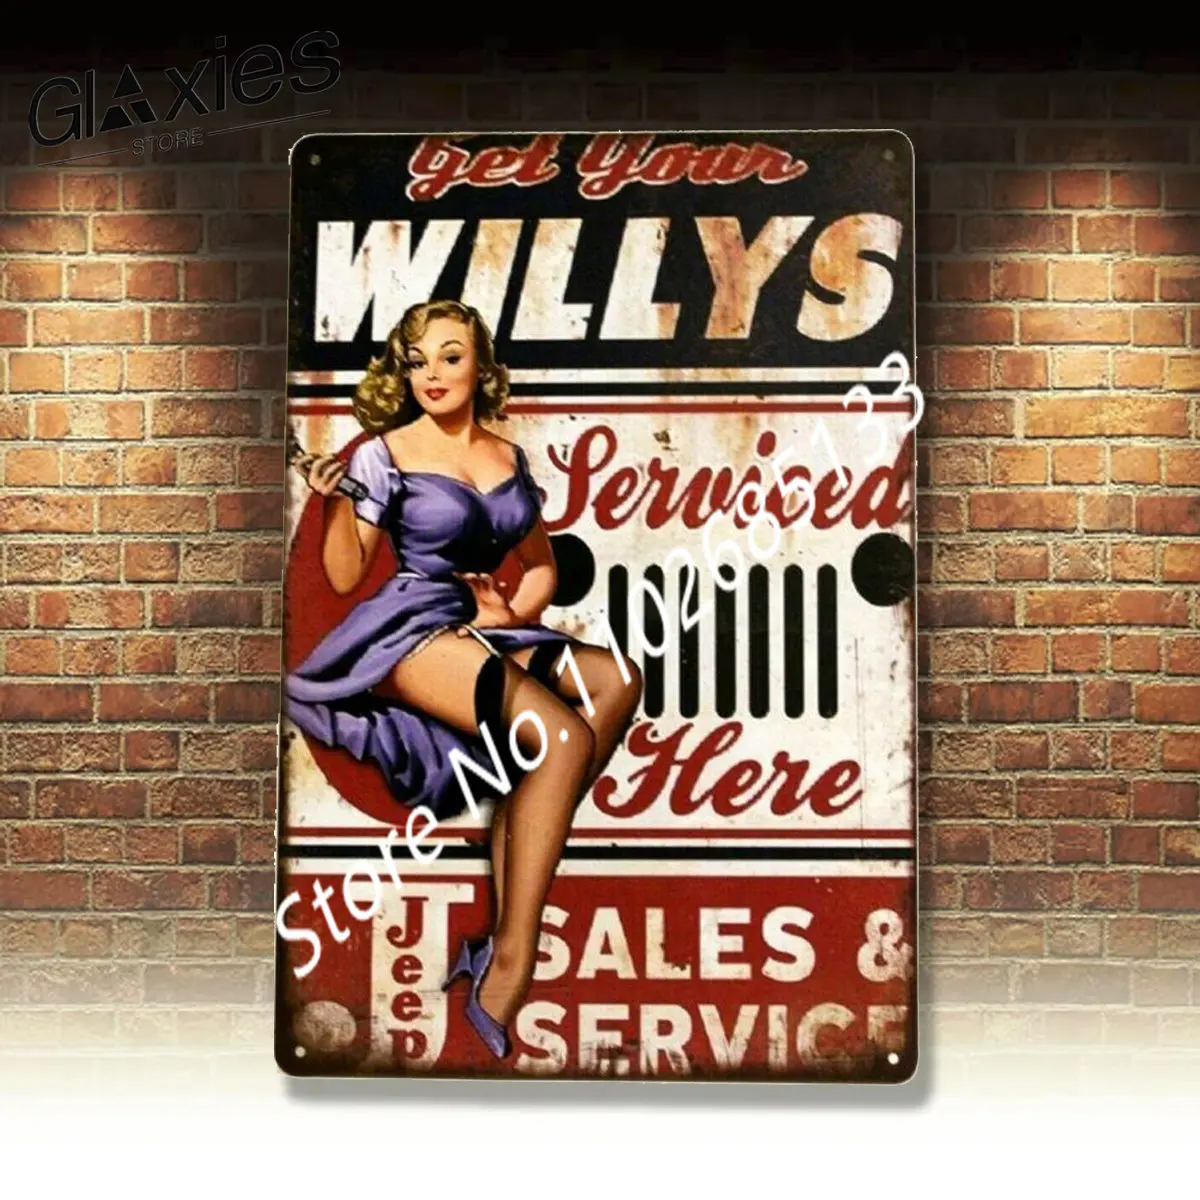 

Новый оловянный постер Willys Service, значок, девушка, человек, пещера, винтажный стиль, гараж